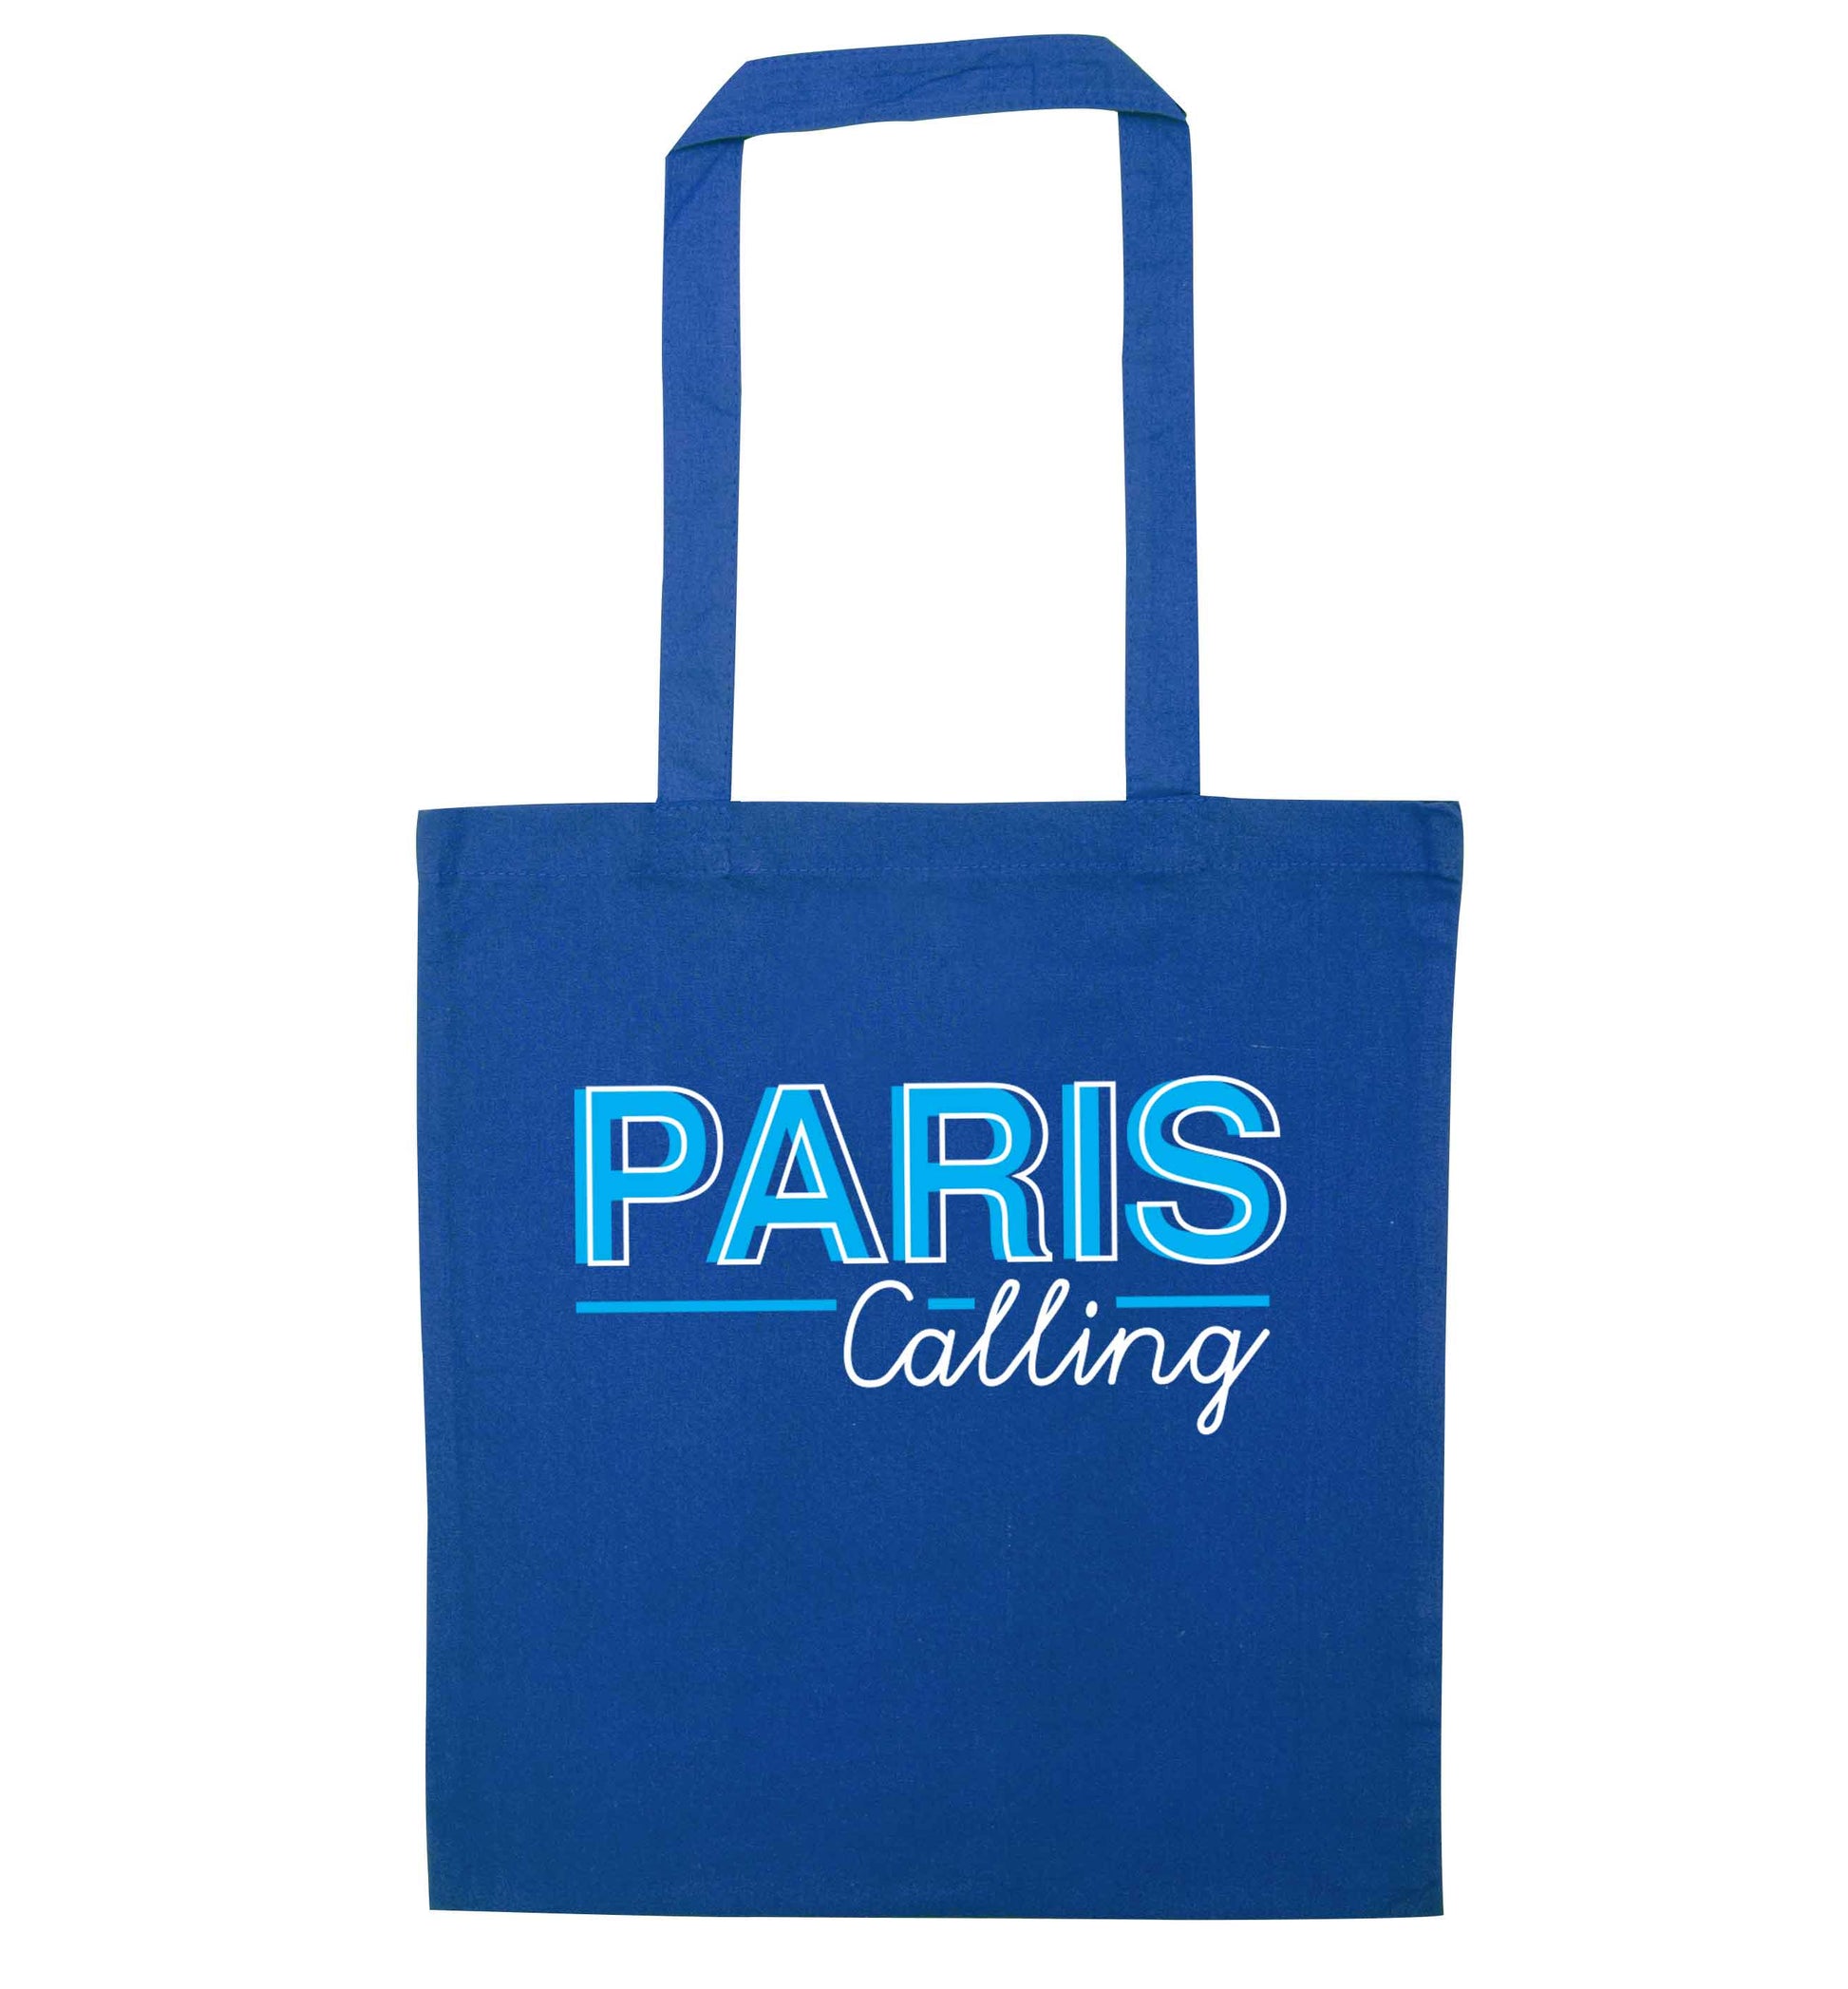 Paris calling blue tote bag